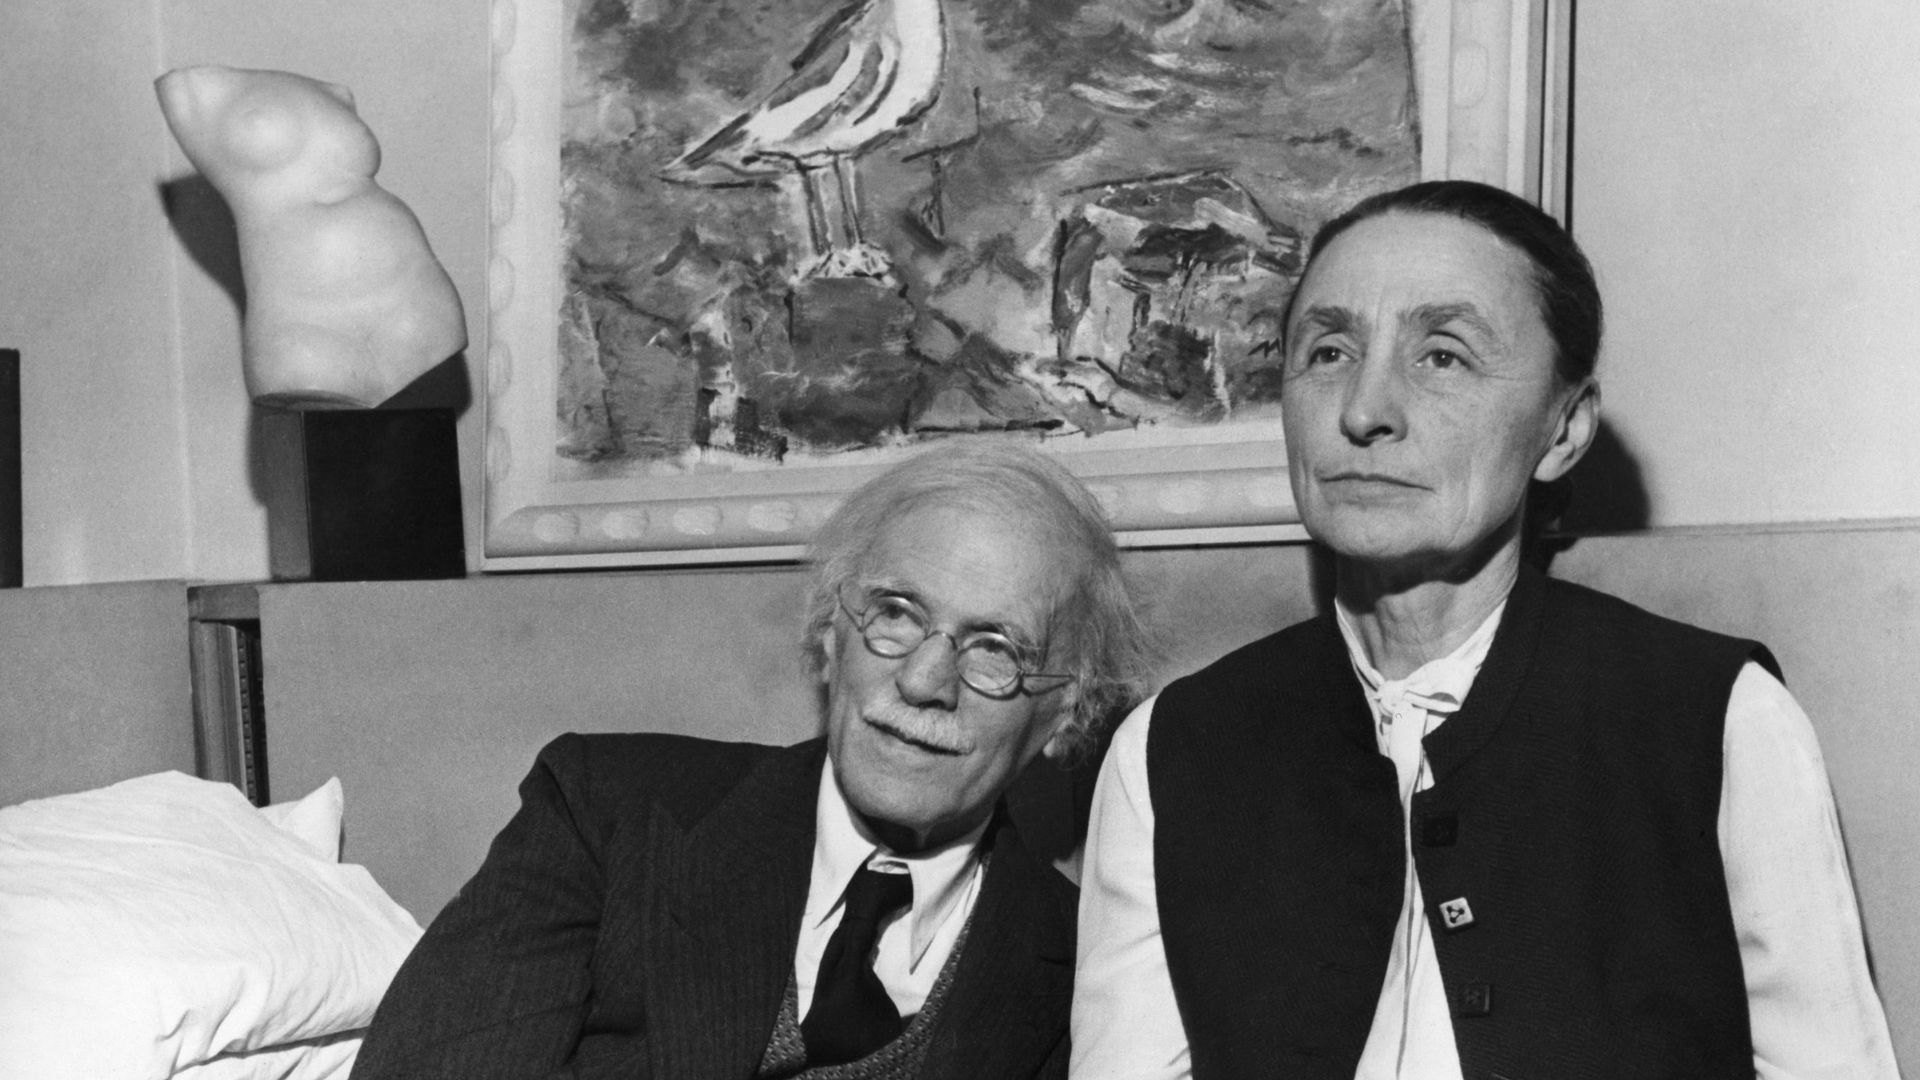 (Légende originale) Georgia O’Keeffe (1887-1986), peintre américaine, photographiée avec son mari, Alfred Stieglitz. Photo non datée.